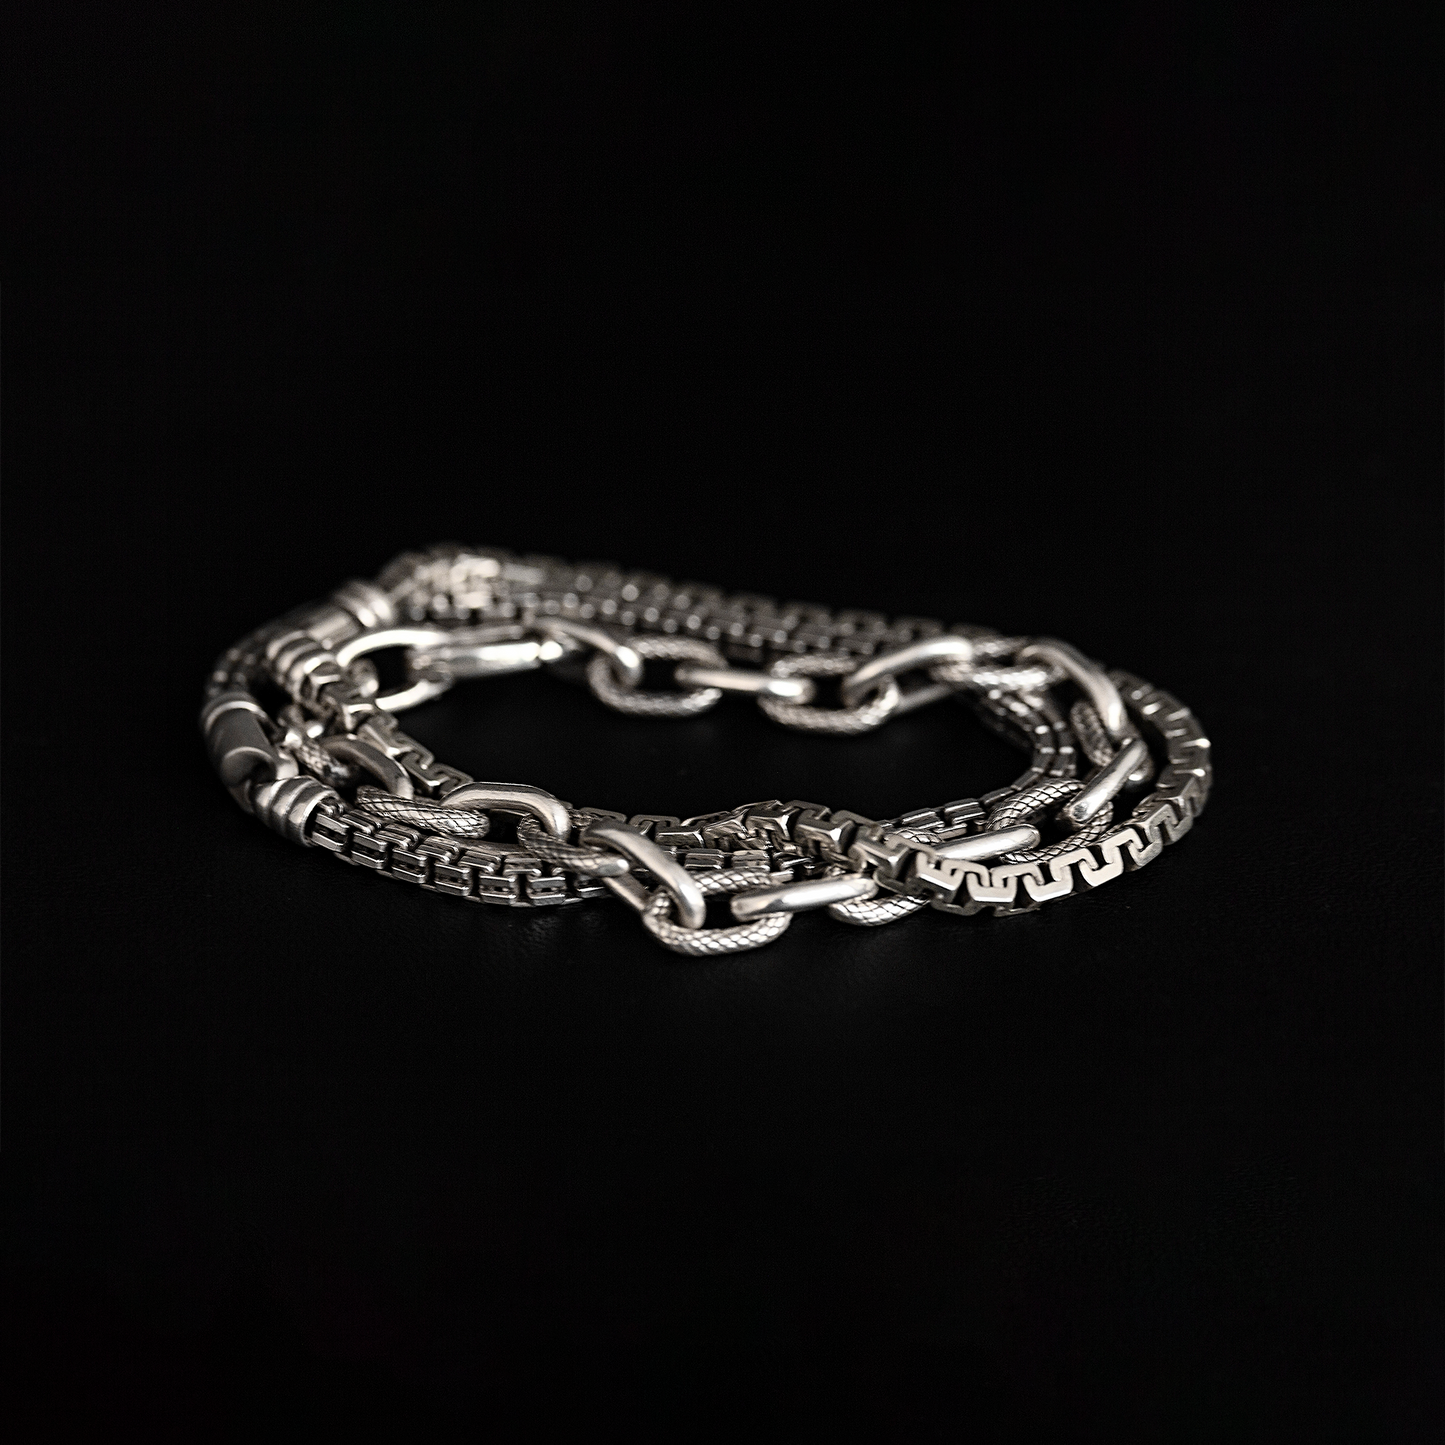 Mooring Chain Bracelet